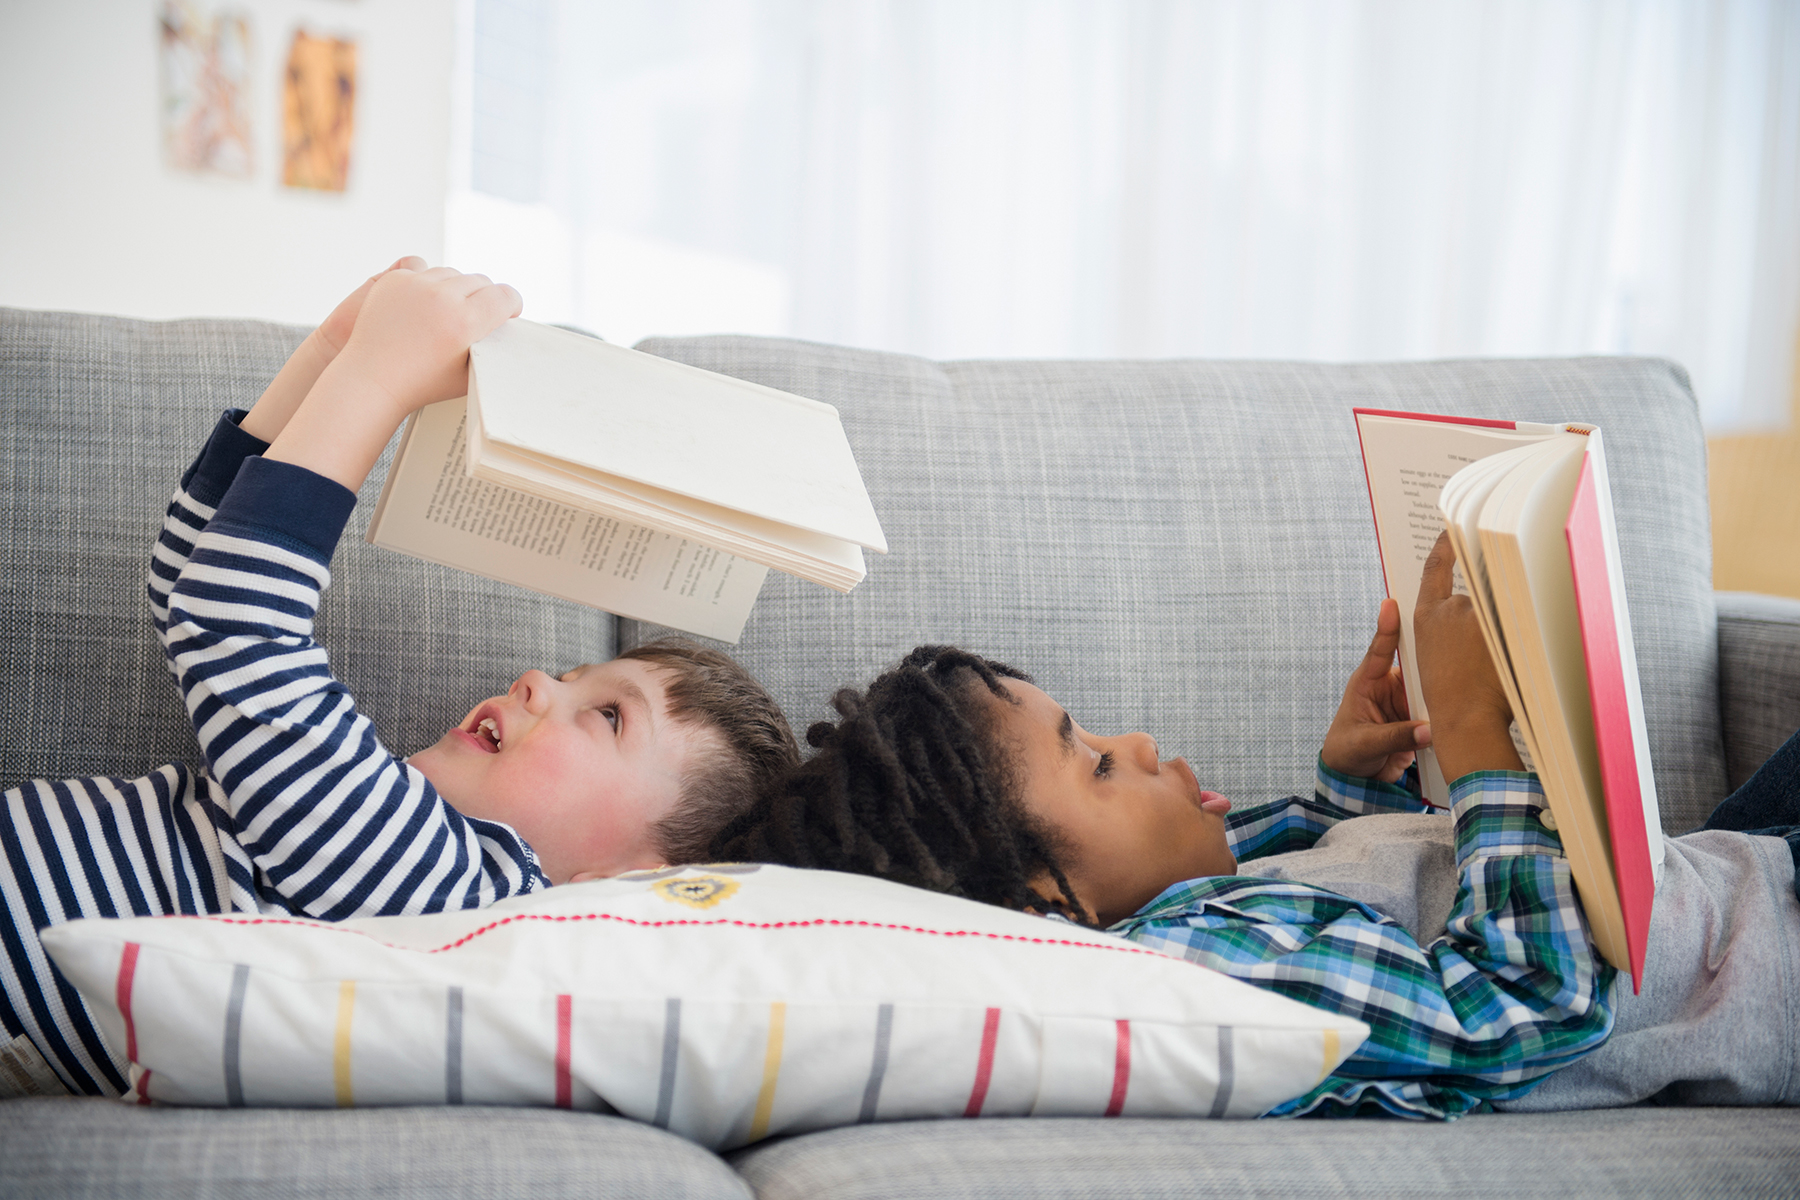 مطالعه کتاب می تواند تاثیرات قابل توجهی در تربیت صحیح فرزندان داشته باشد.